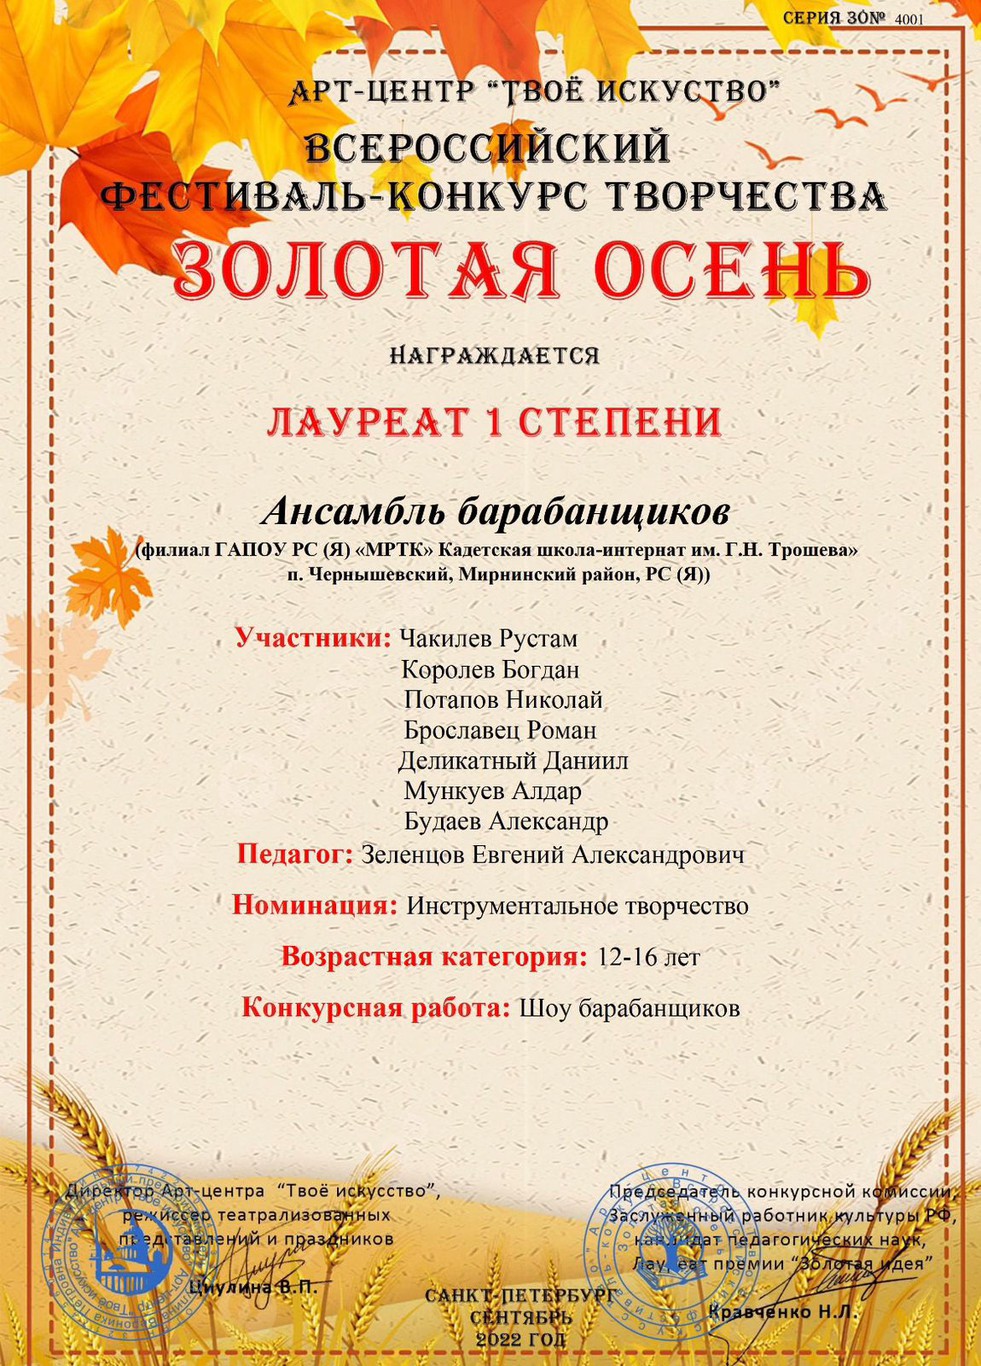 Ансамбль барабанщиков «КШИ им. Г.Н. Трошева» стал лауреатом первой степени на Всероссийском фестивале-конкурсе творчества «Золотая осень».